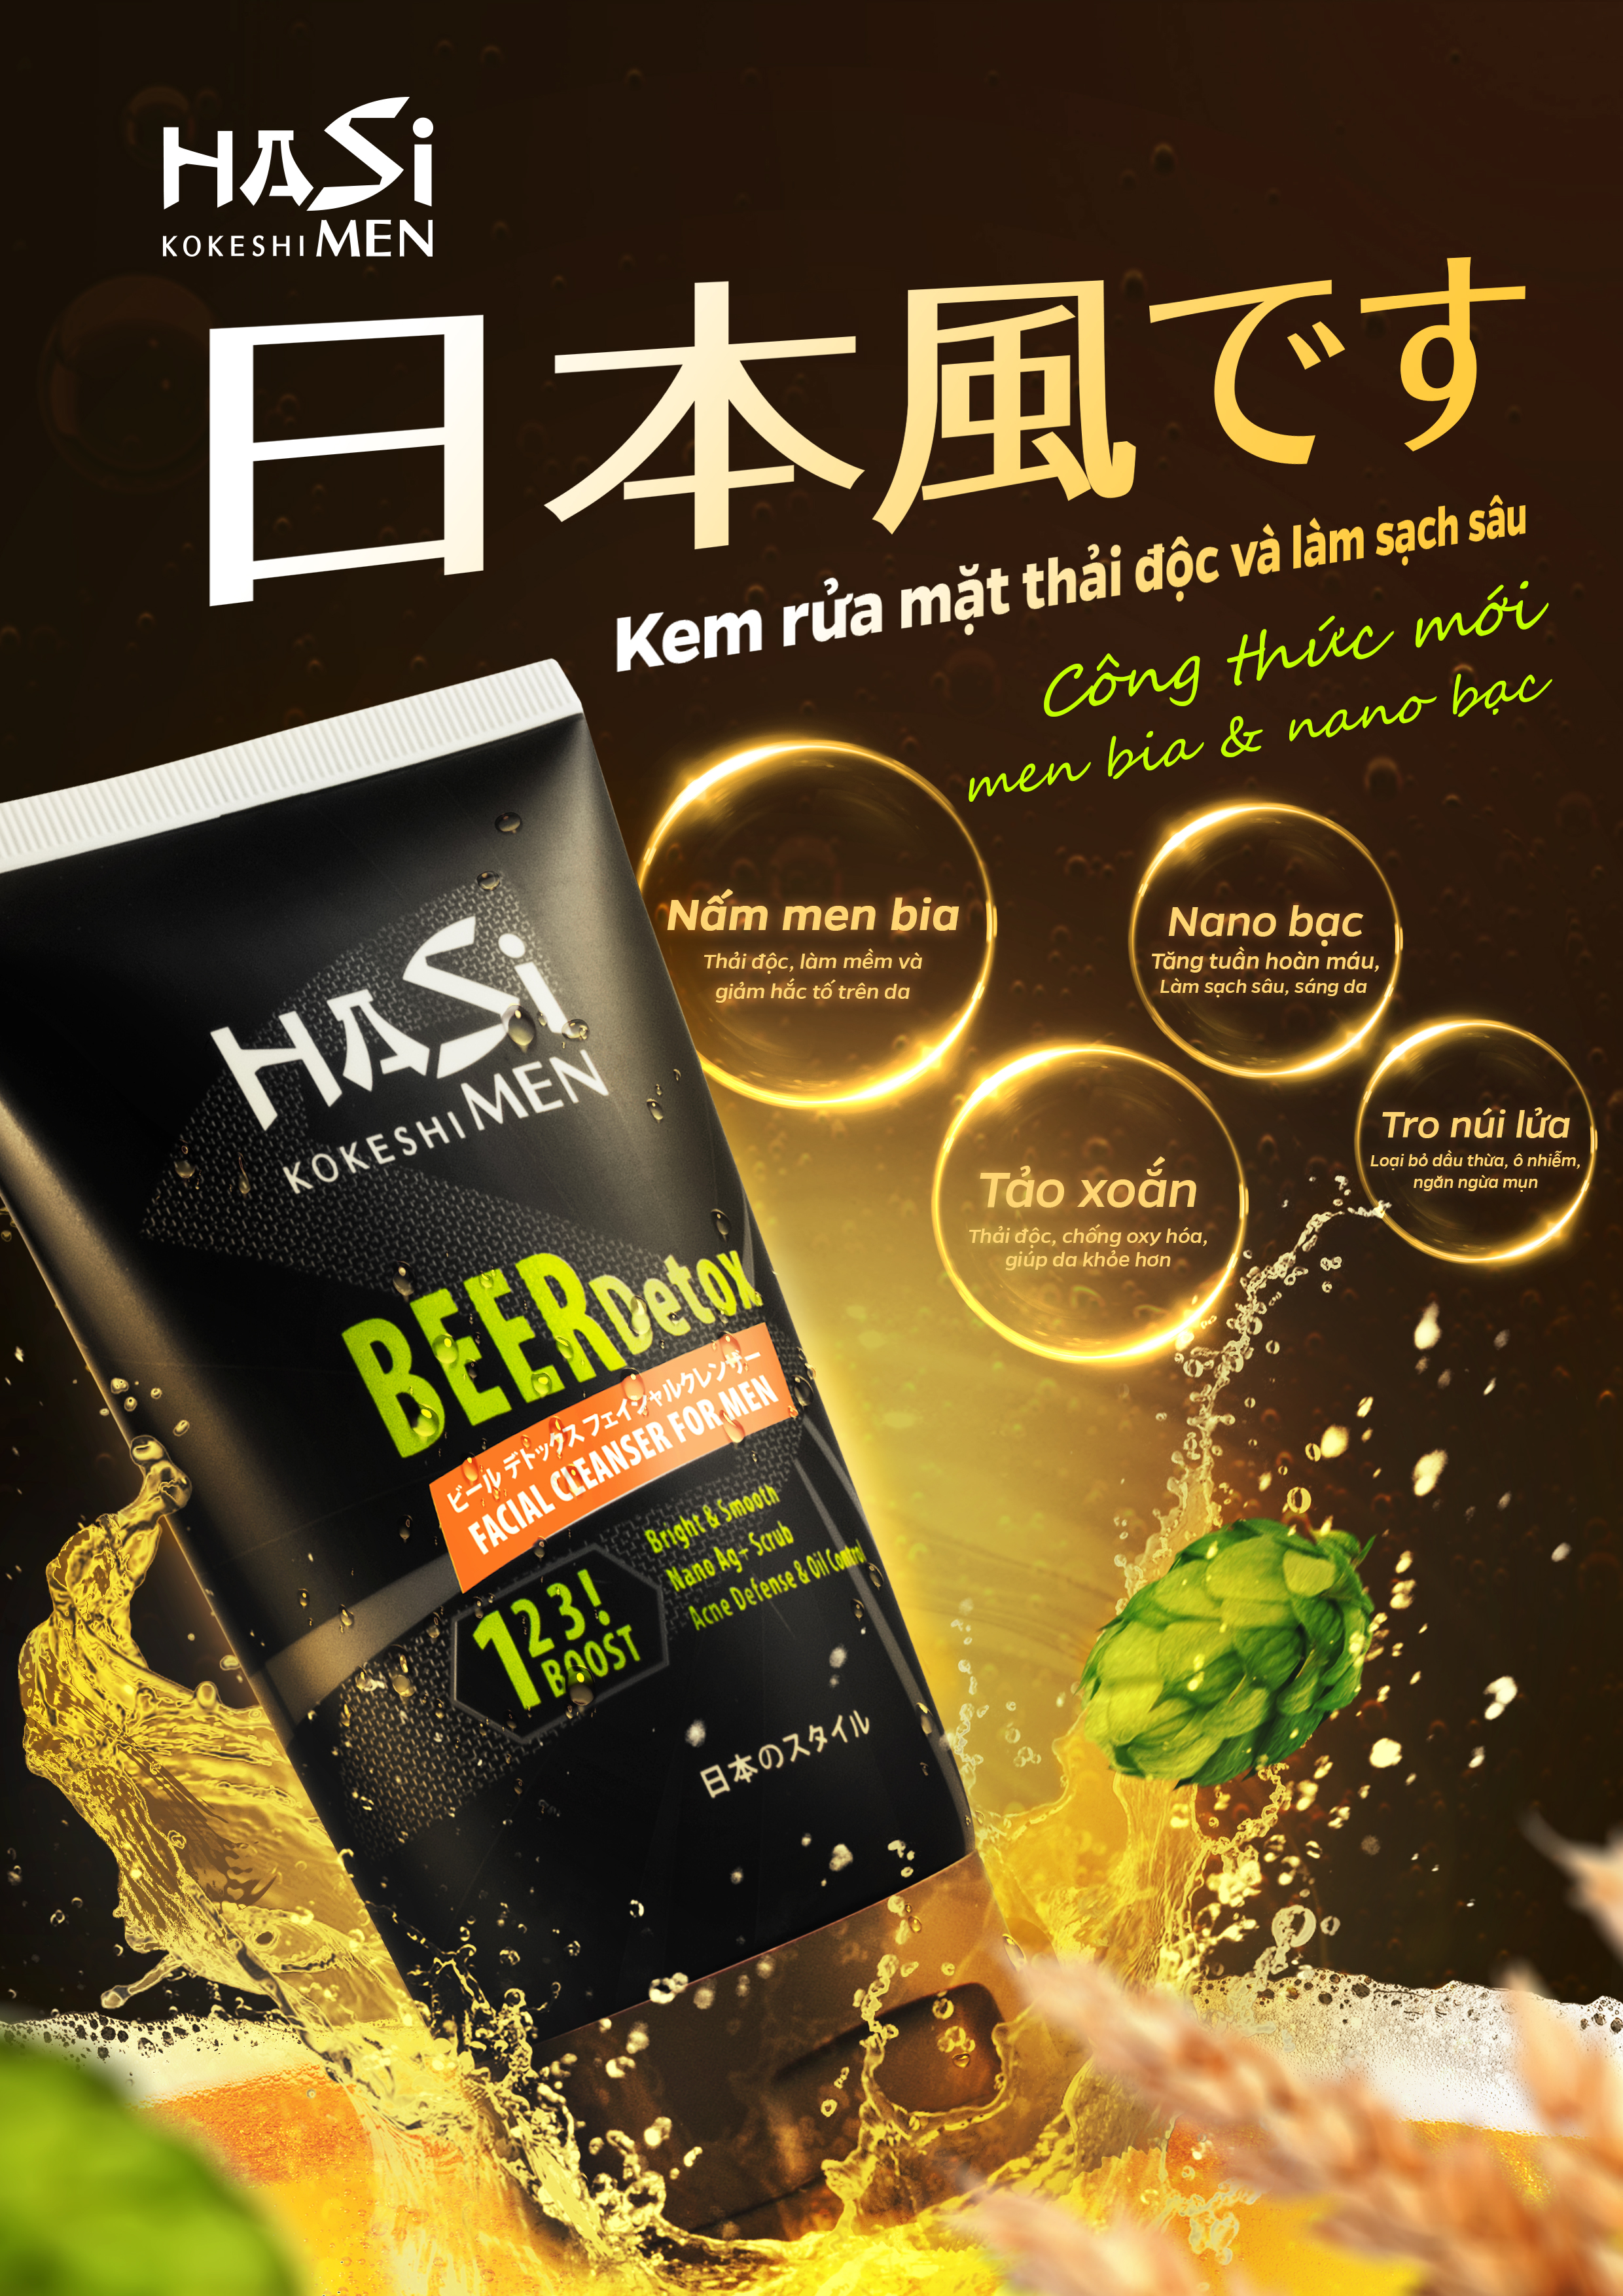 Combo 2 tuýp Kem rửa mặt nam Hasi Kokeshi - Beer Detox Facial Cleanser For Men